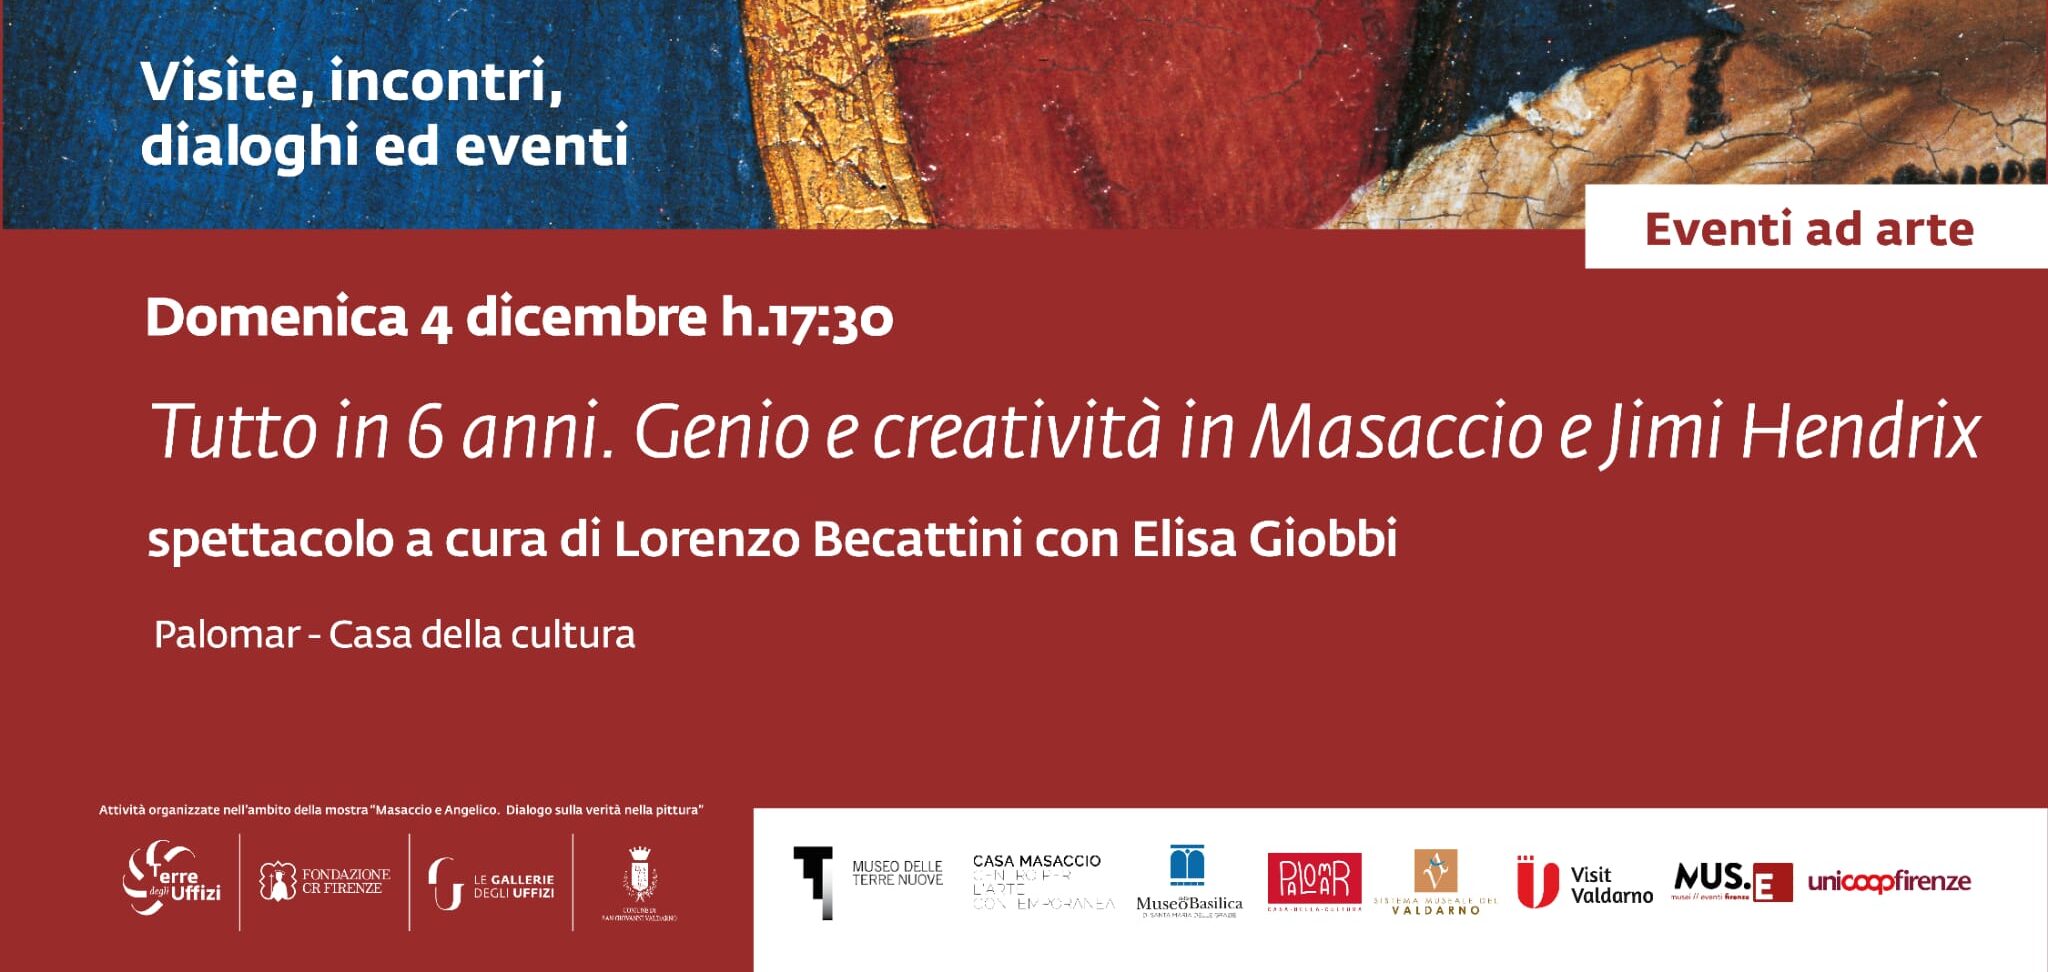 Il lato rock di Masaccio: i colori di Jimi Hendrix e il mecenatismo di Cosimo de’ Medici